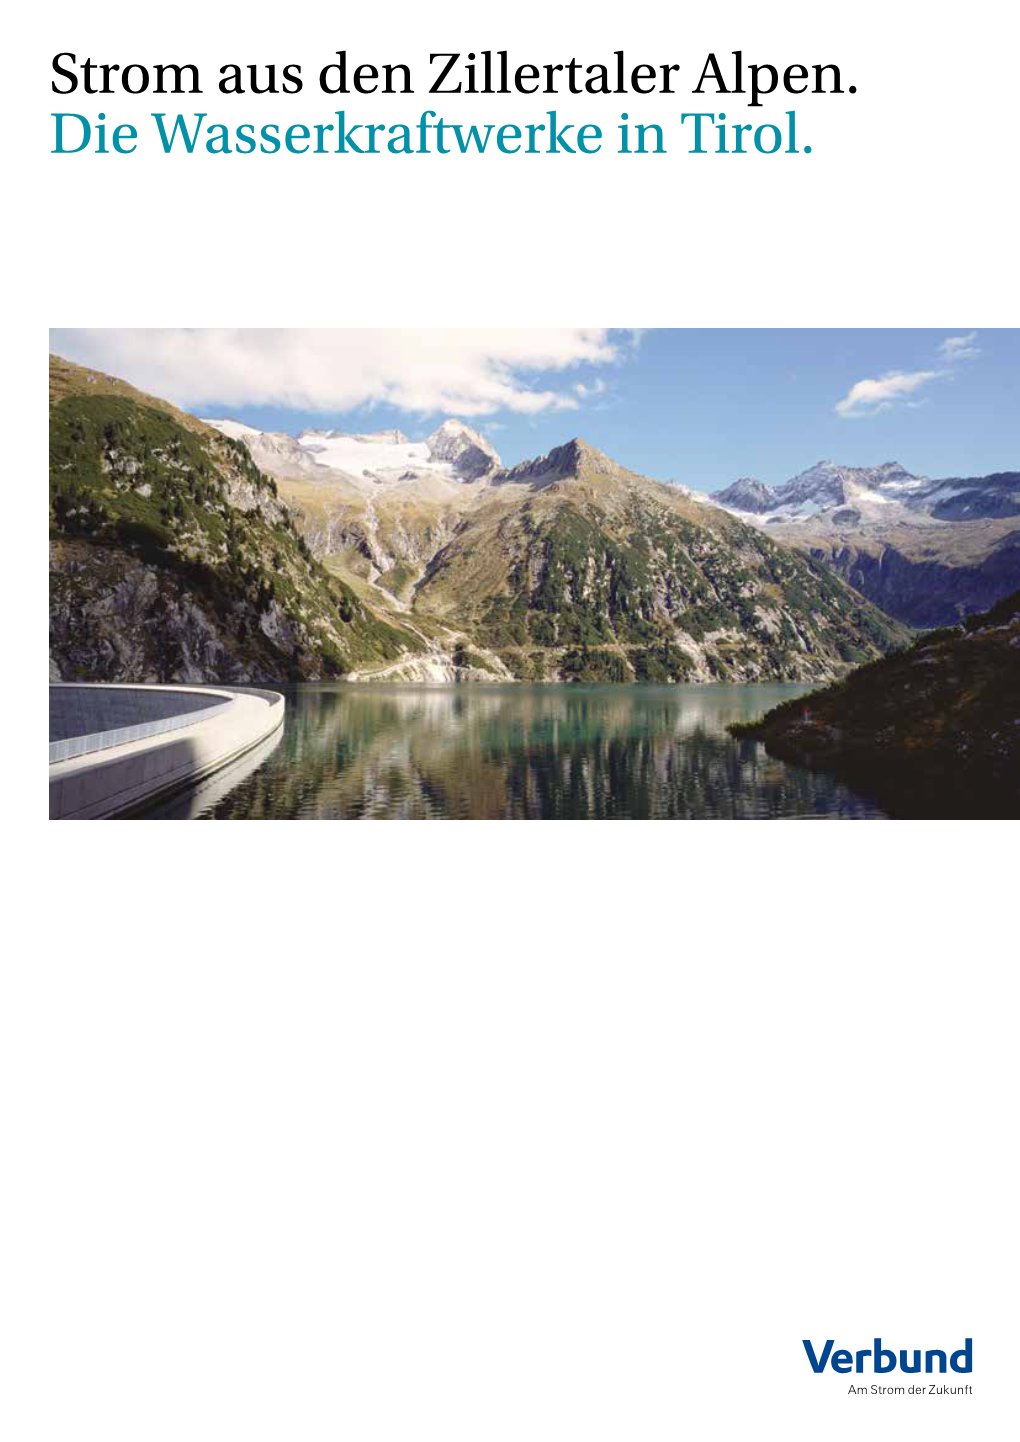 Strom Aus Den Zillertaler Alpen. Die Wasserkraftwerke in Tirol. WASSERKRAFTWERKE in TIROL 3